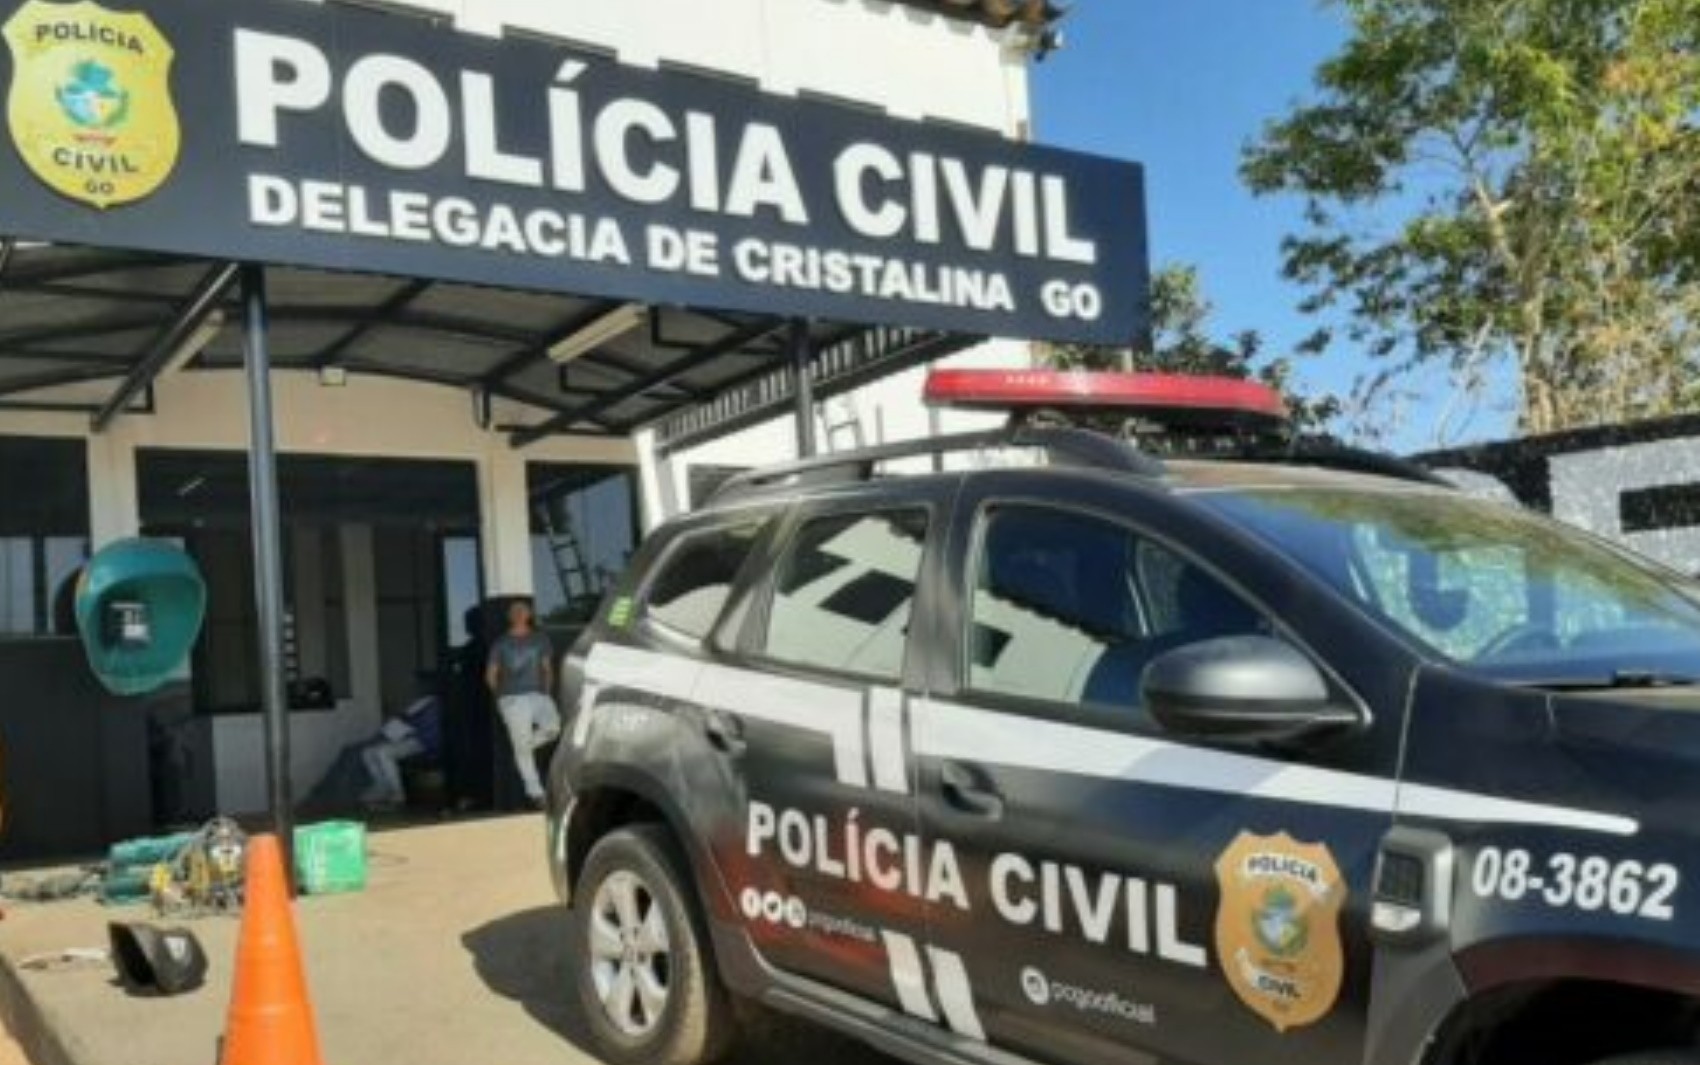 Mãe condenada por prostituir a filha é presa em Goiás, diz polícia